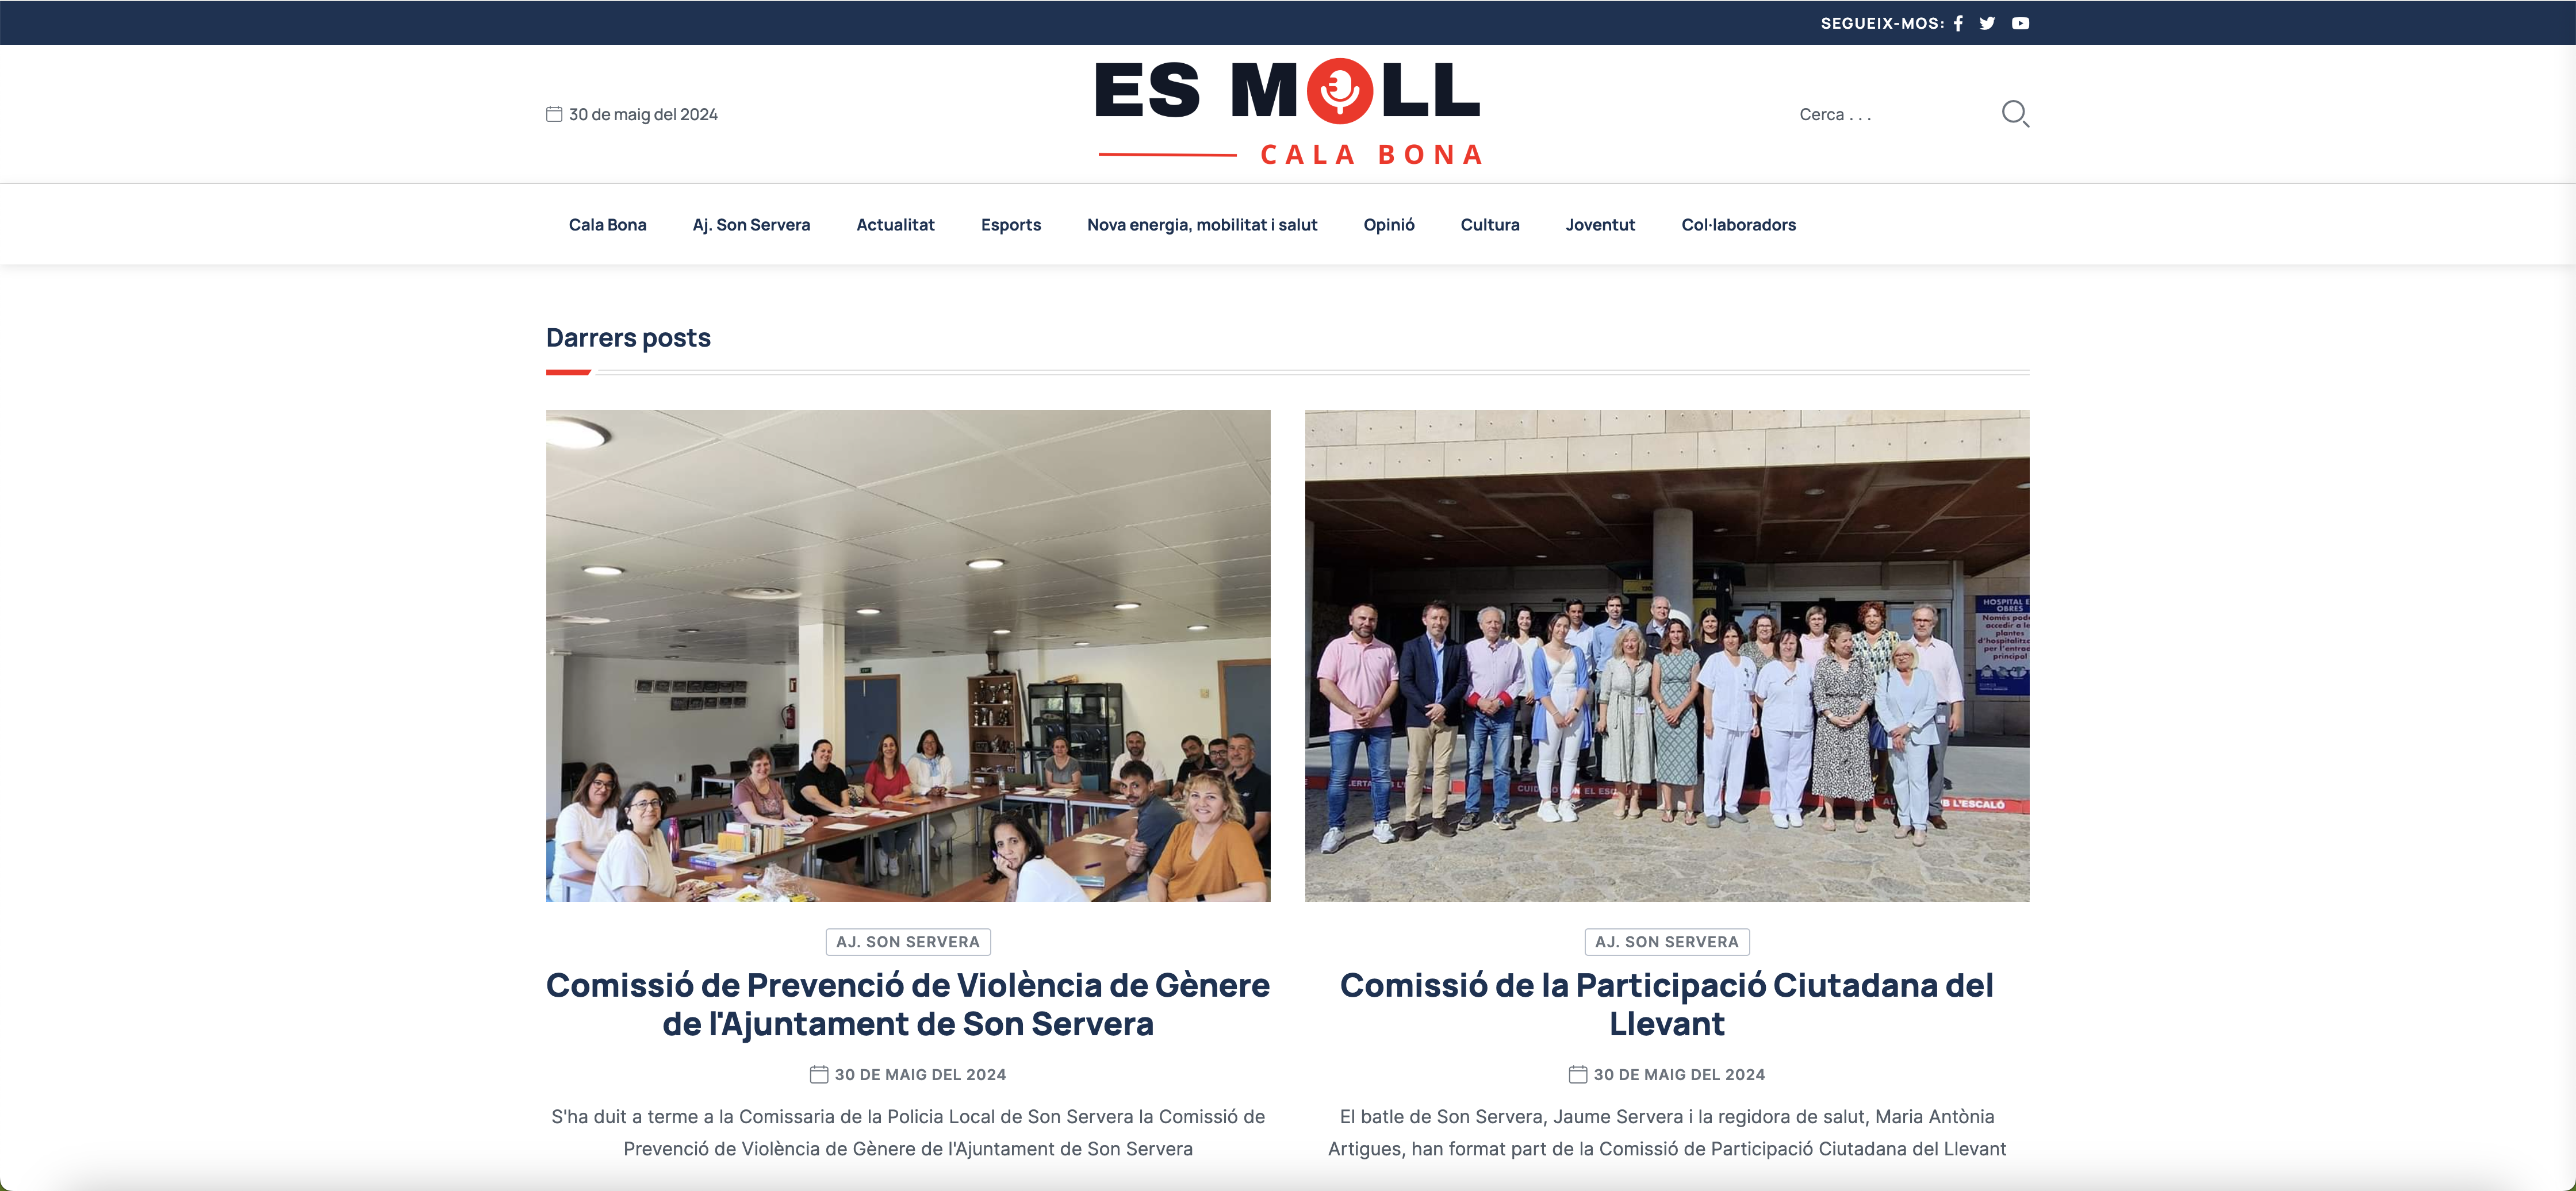 Esmollcalabona.cat s'incorpora a l'AssociaciÃ³ de Premsa Forana de Mallorca